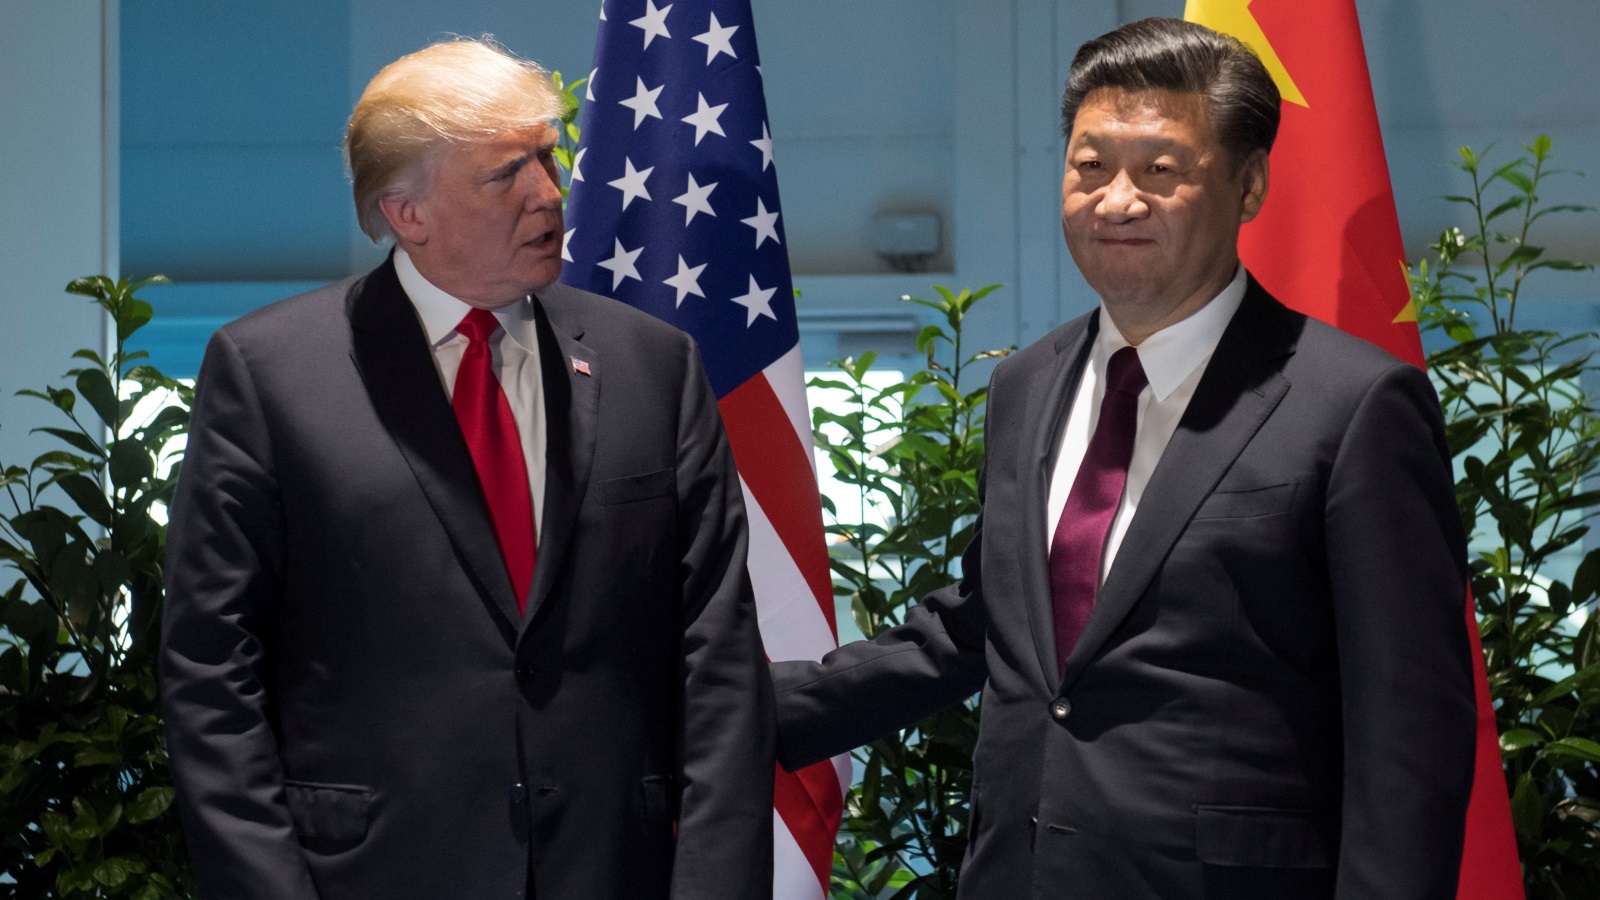 ‪الرئيسان الأميركي والصيني التقيا بأكثر من مناسبة‬ (رويترز)